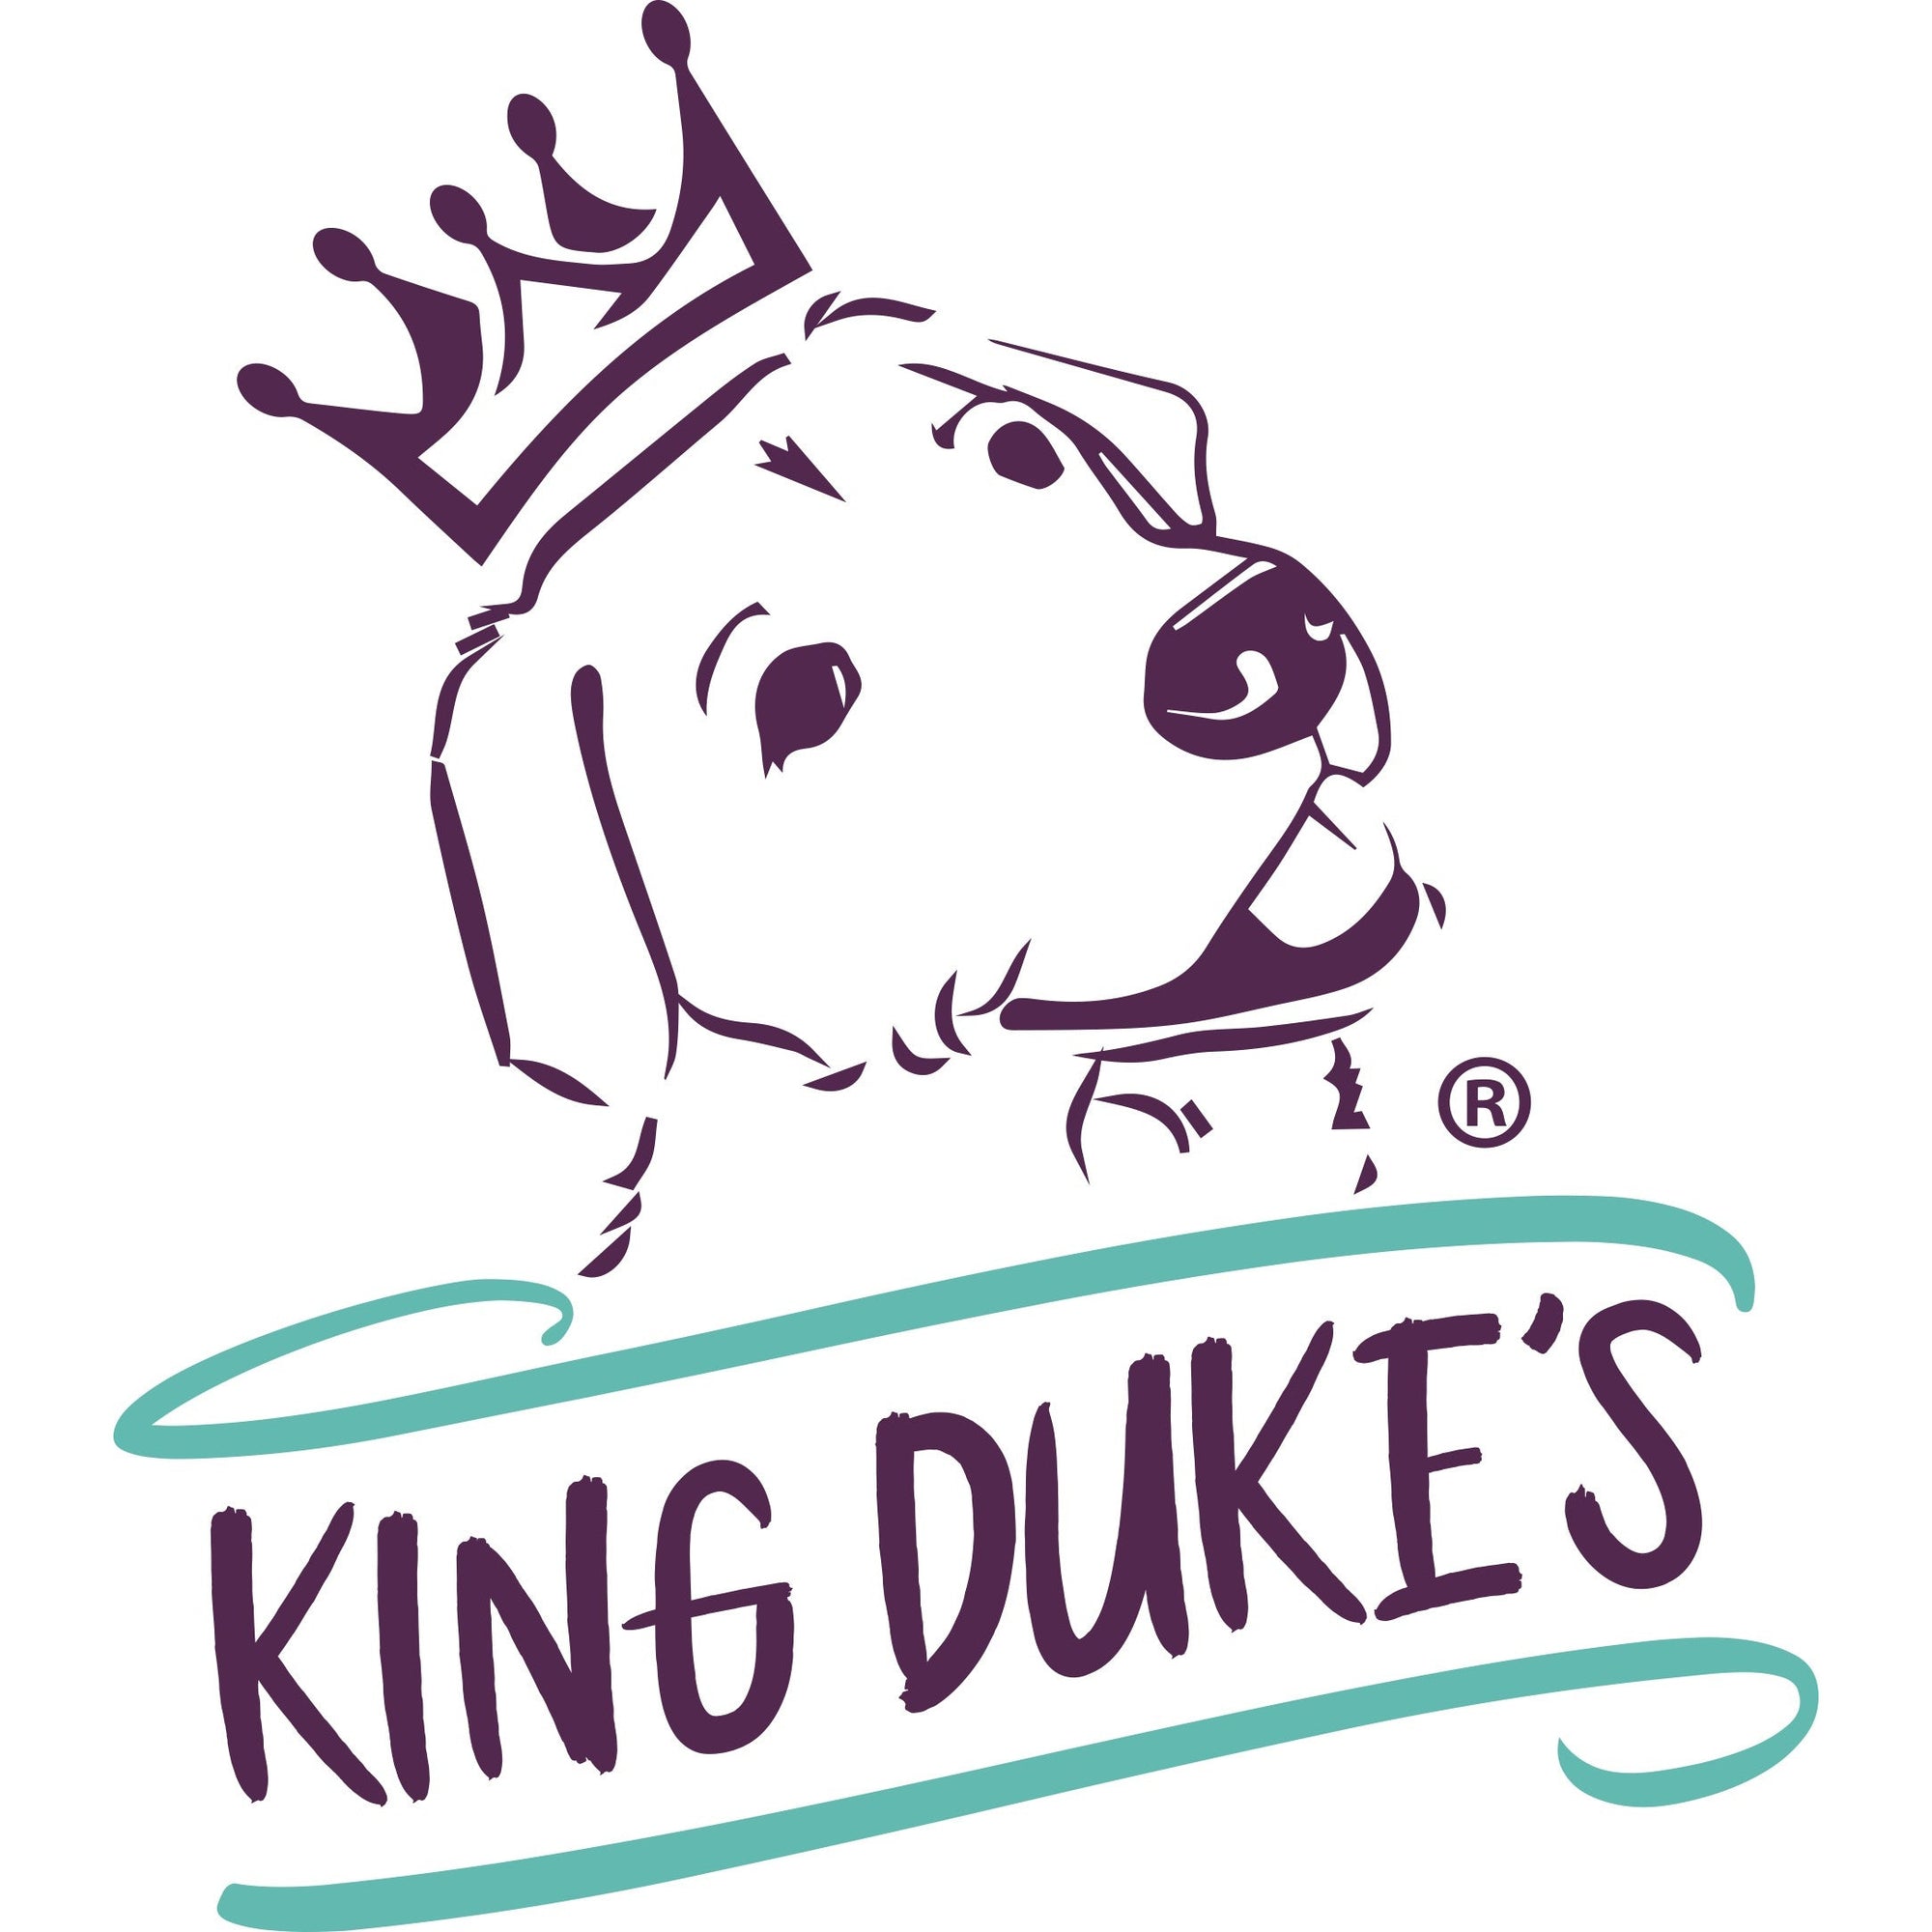 King Duke's Gift Card